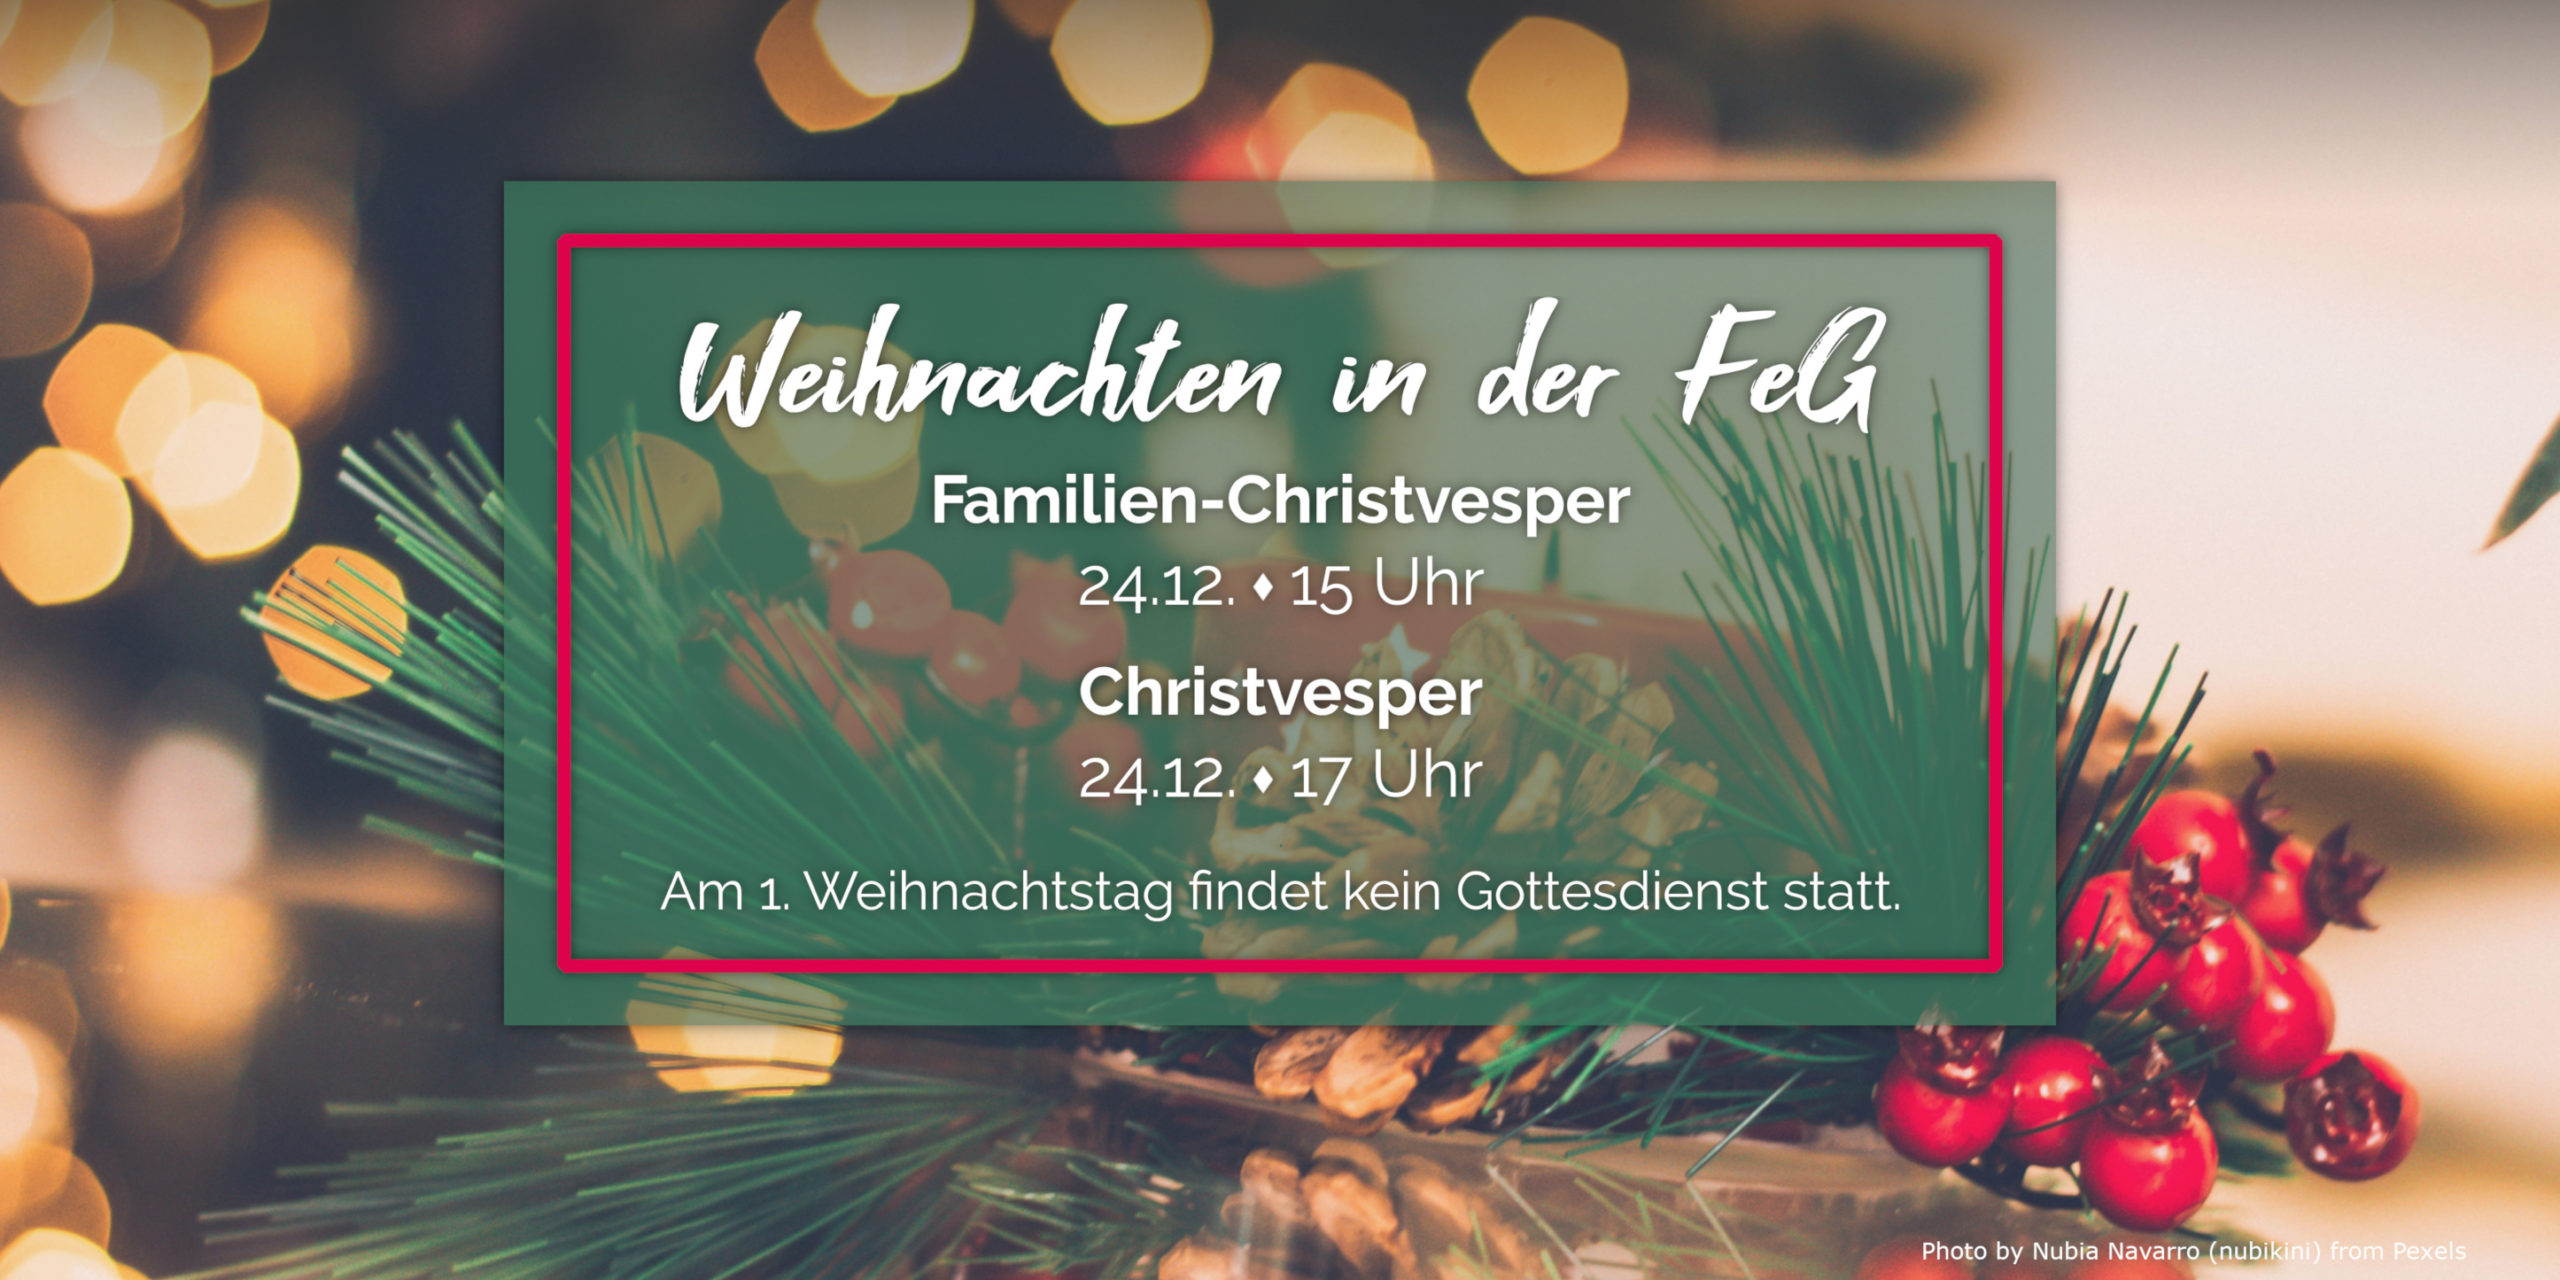 You are currently viewing Weihnachten in der FeG Rheinbach